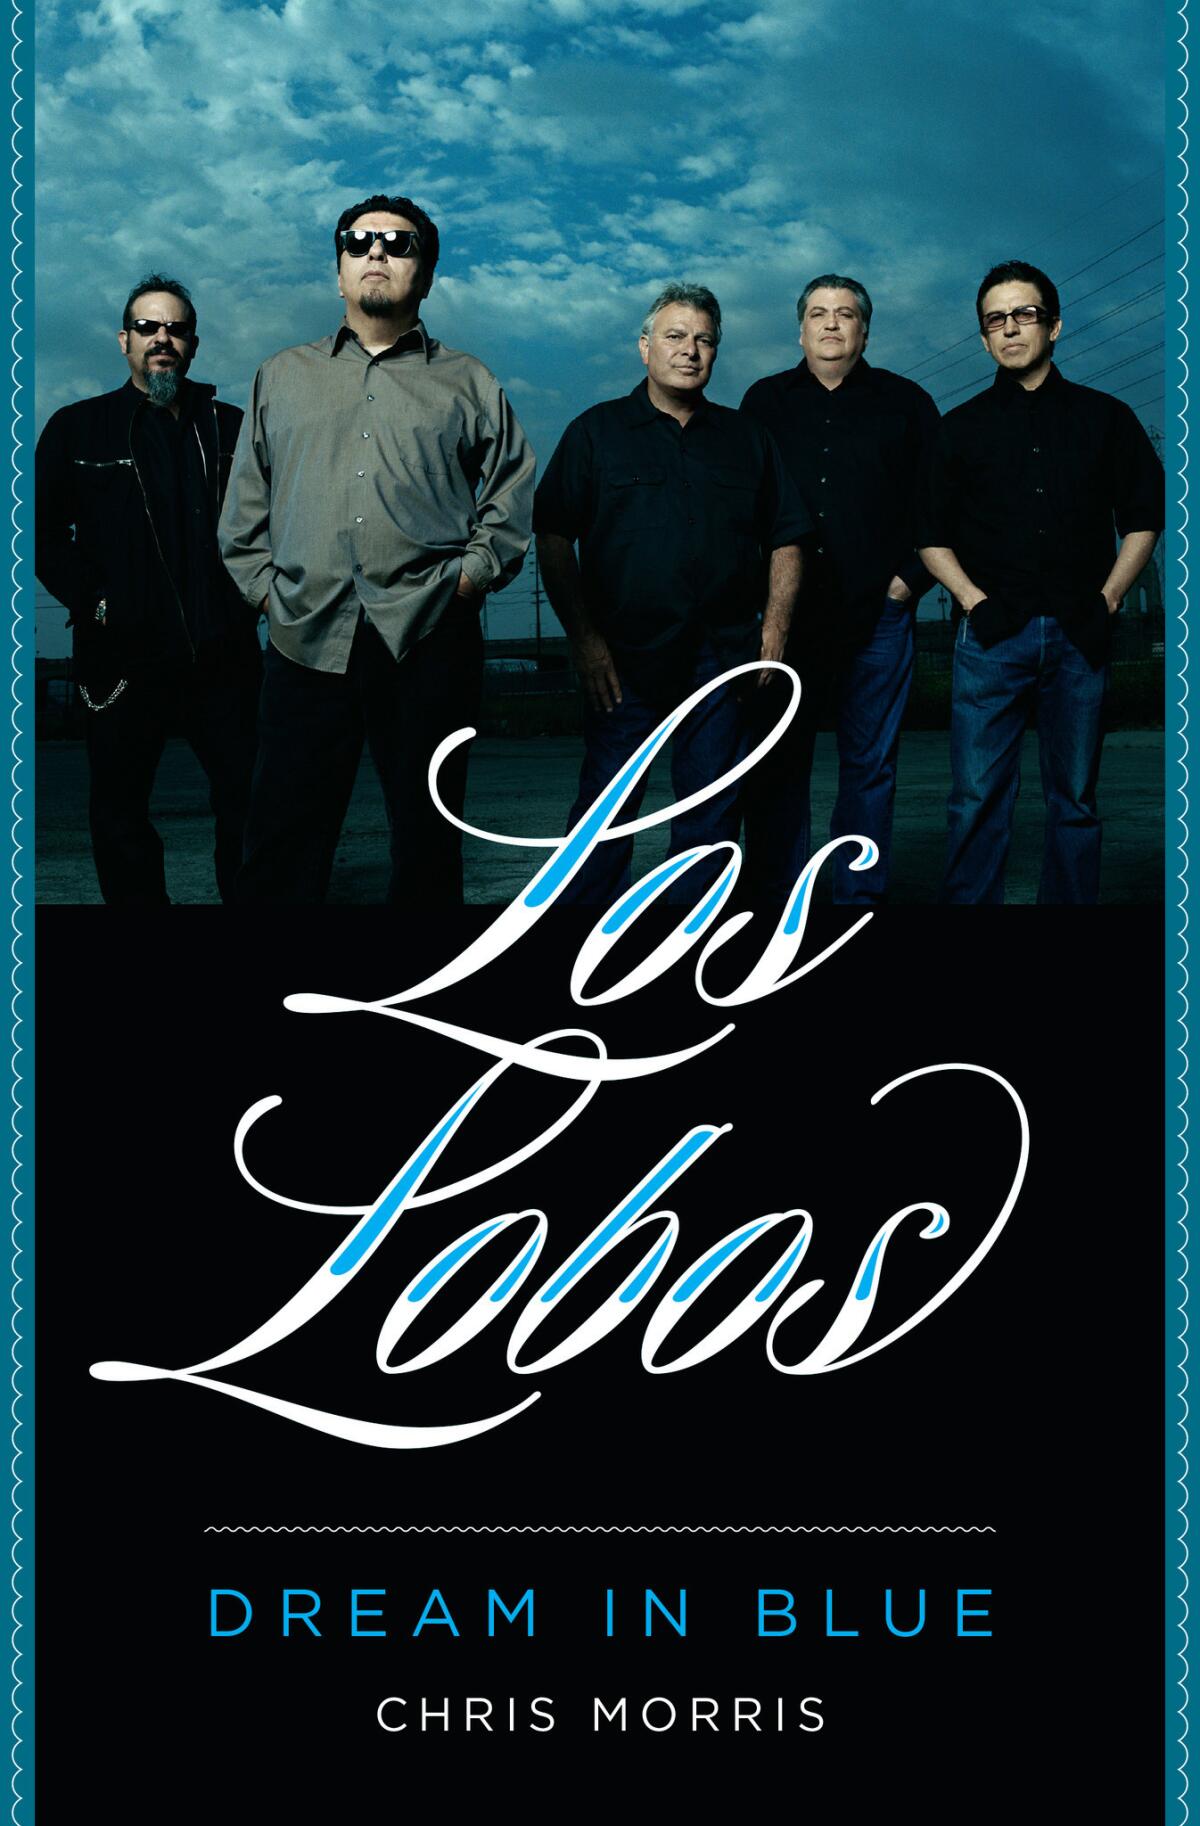 "Los Lobos: Dream in Blue" by Chris Morris